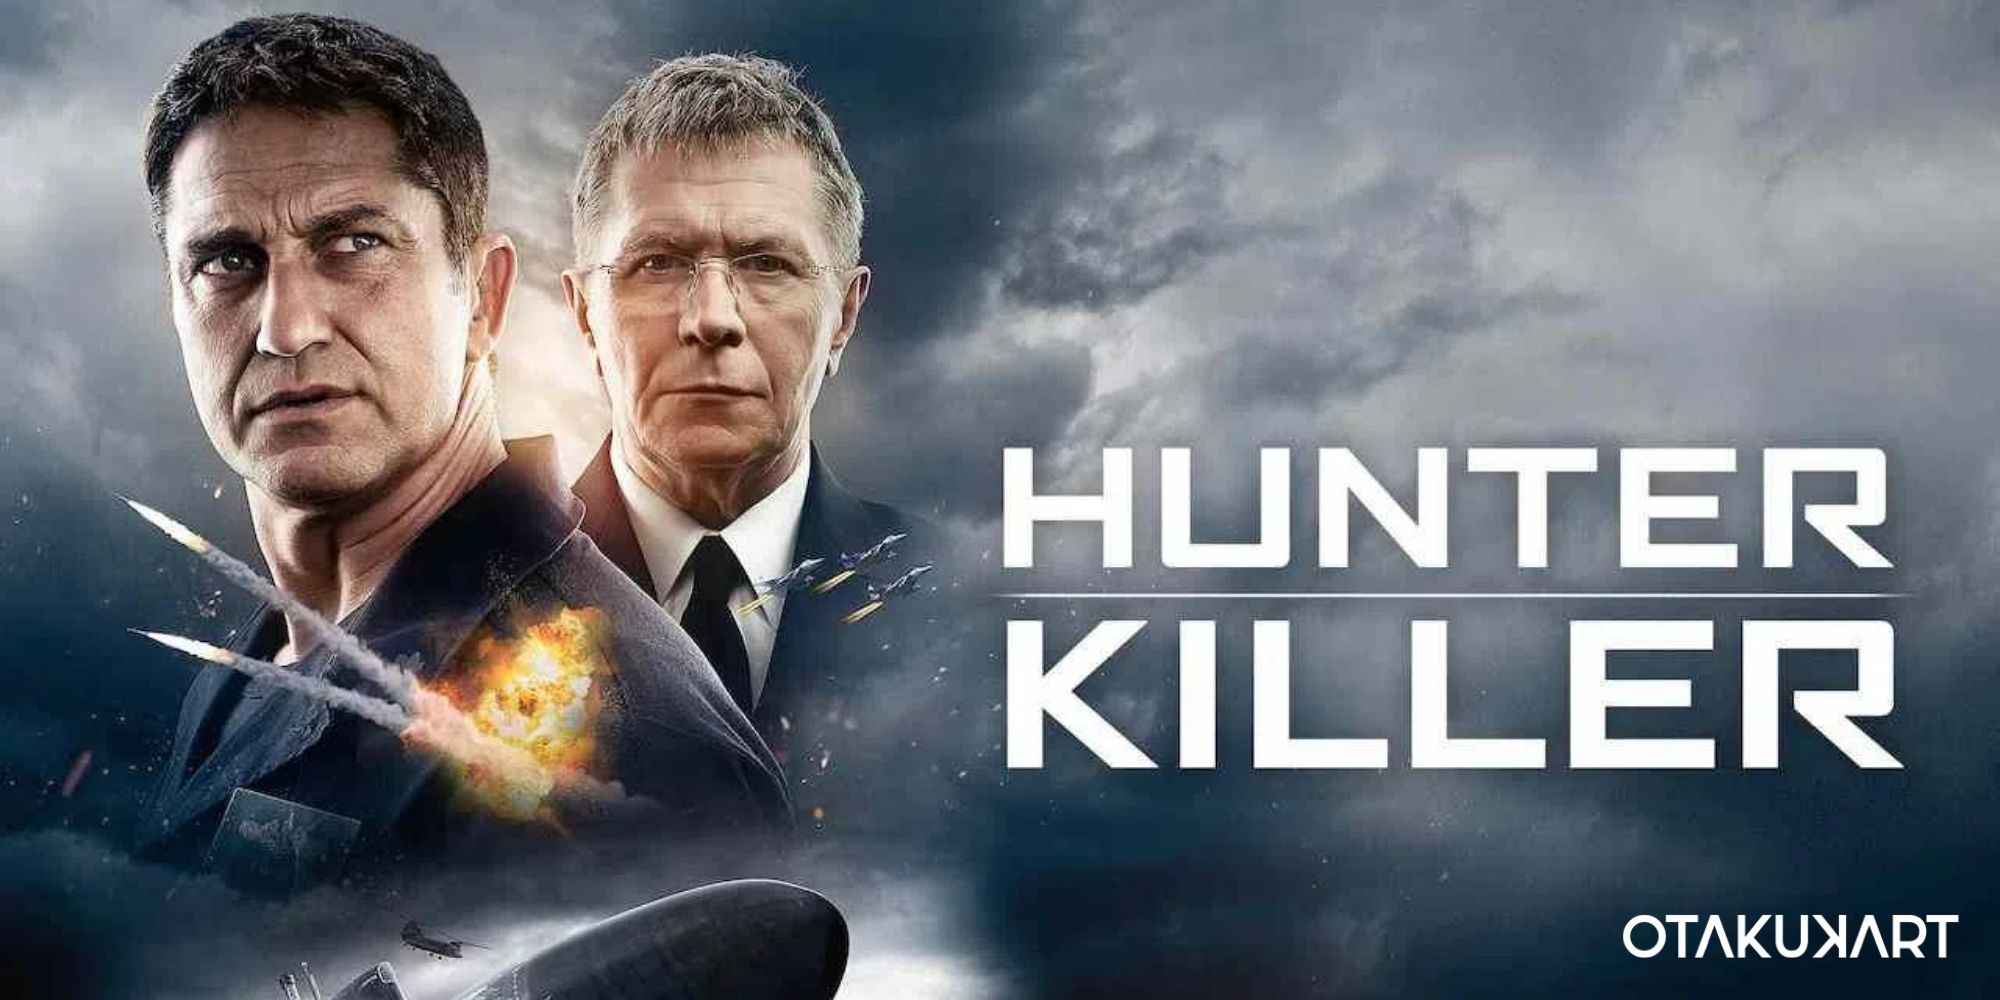 Where Is Hunter Killer Filmed?